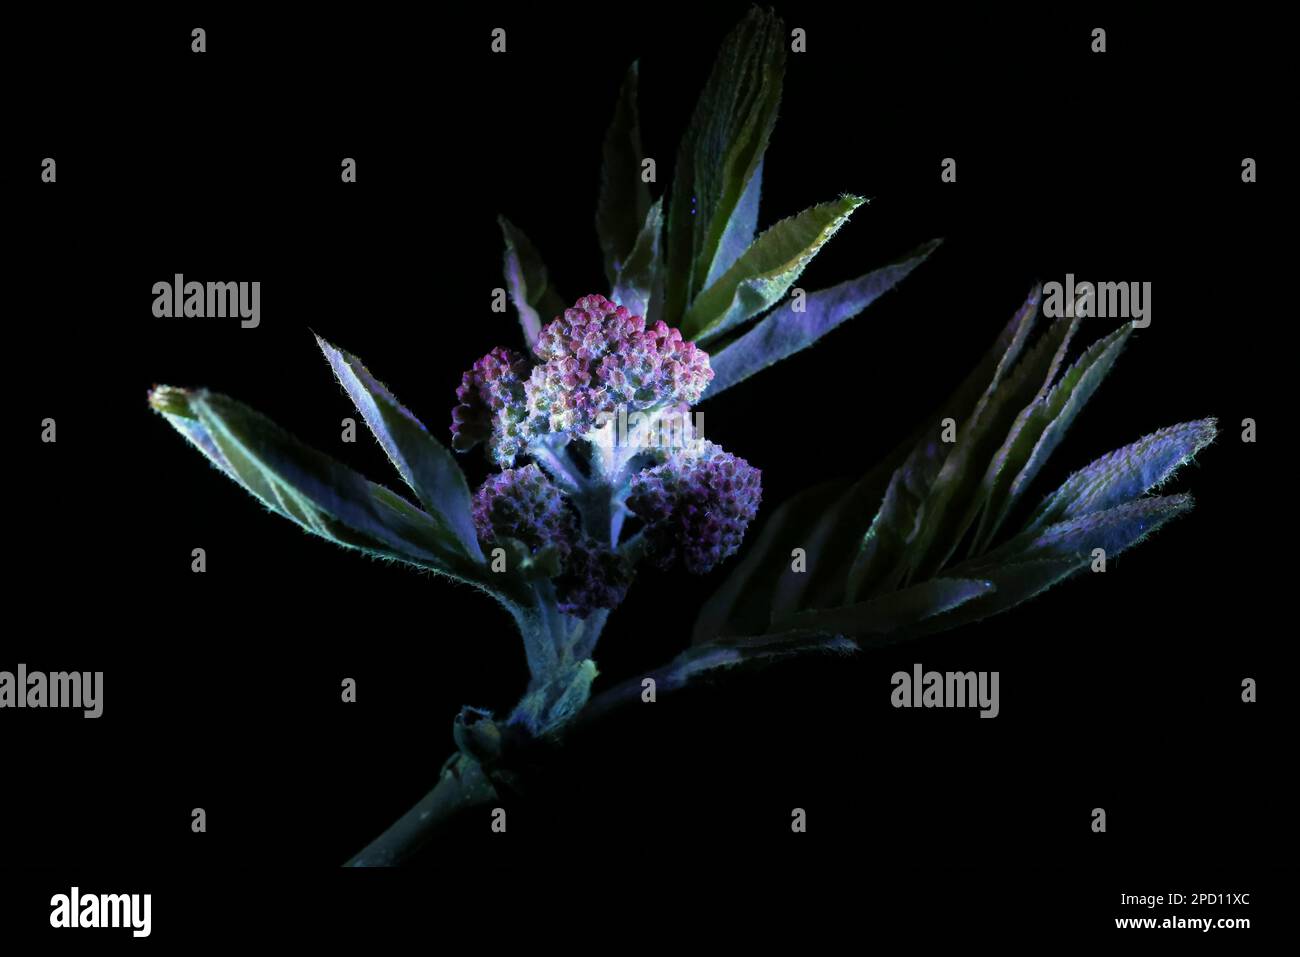 Rowan, Sorbus aucuparia, boutons de fleurs photographiés dans la lumière ultraviolette Banque D'Images